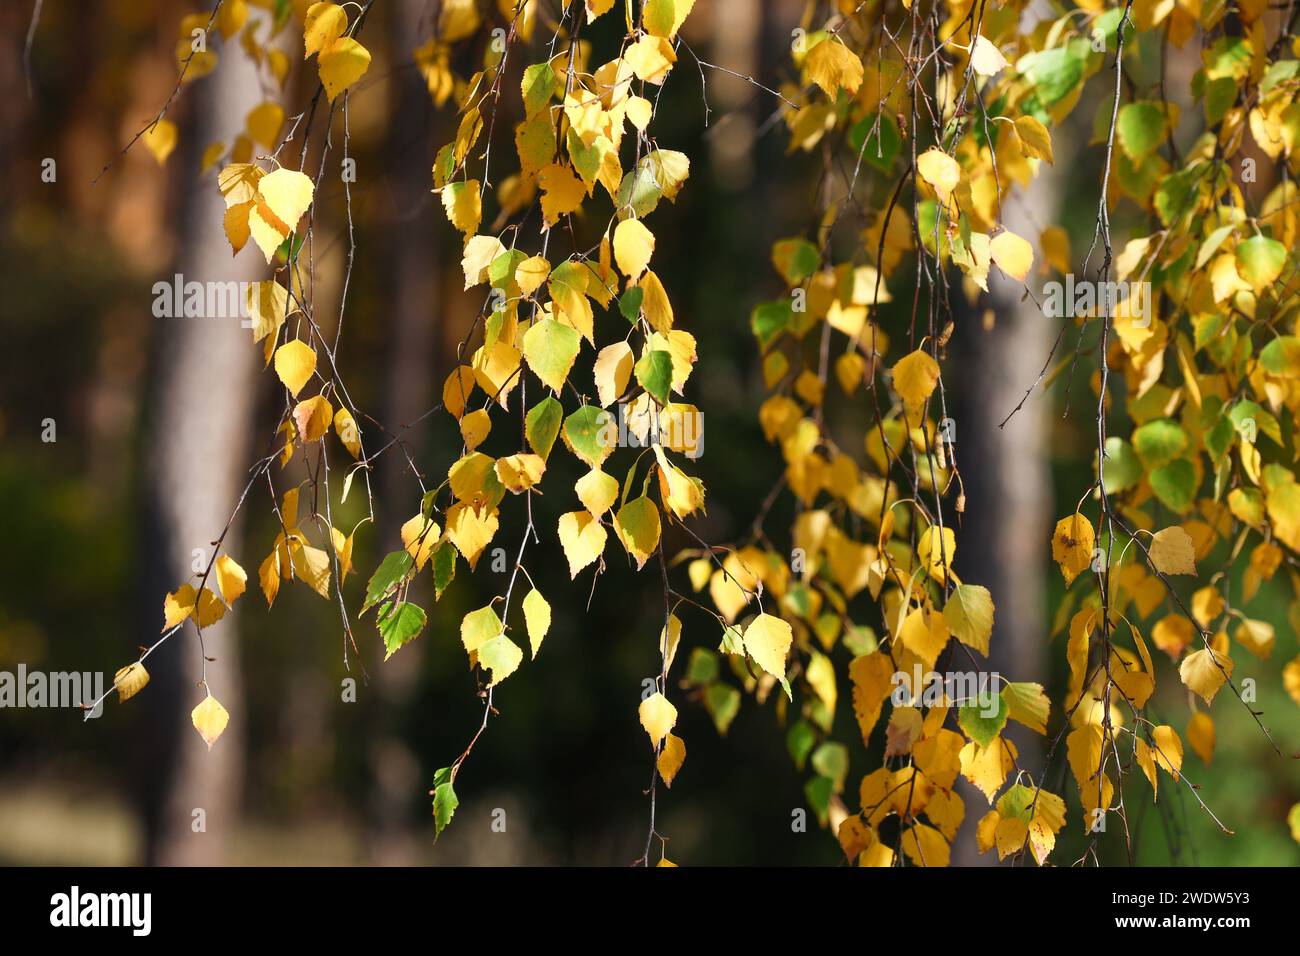 foglie gialle sull'albero, all'inizio dell'autunno. Foto di alta qualità Foto Stock